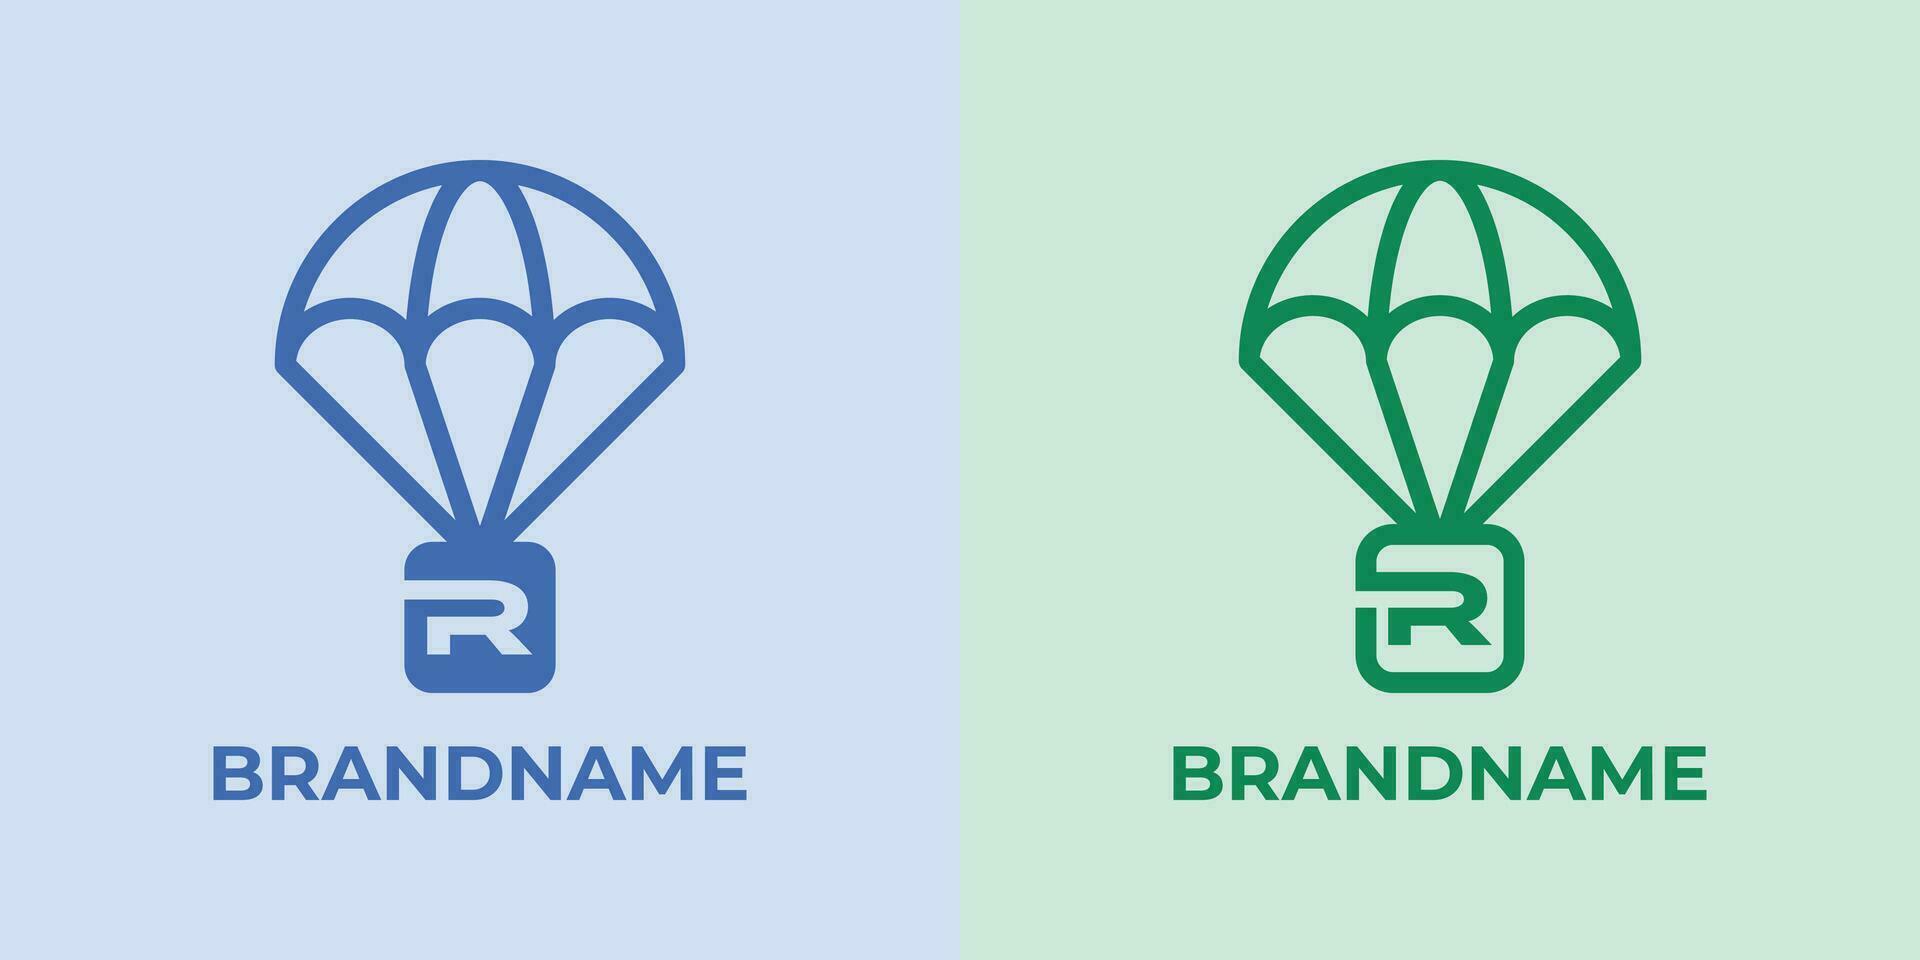 första r fallskärmsnedsläpp logotyp uppsättning, bra för företag relaterad till fallskärmsnedsläpp eller fallskärmar med r första vektor